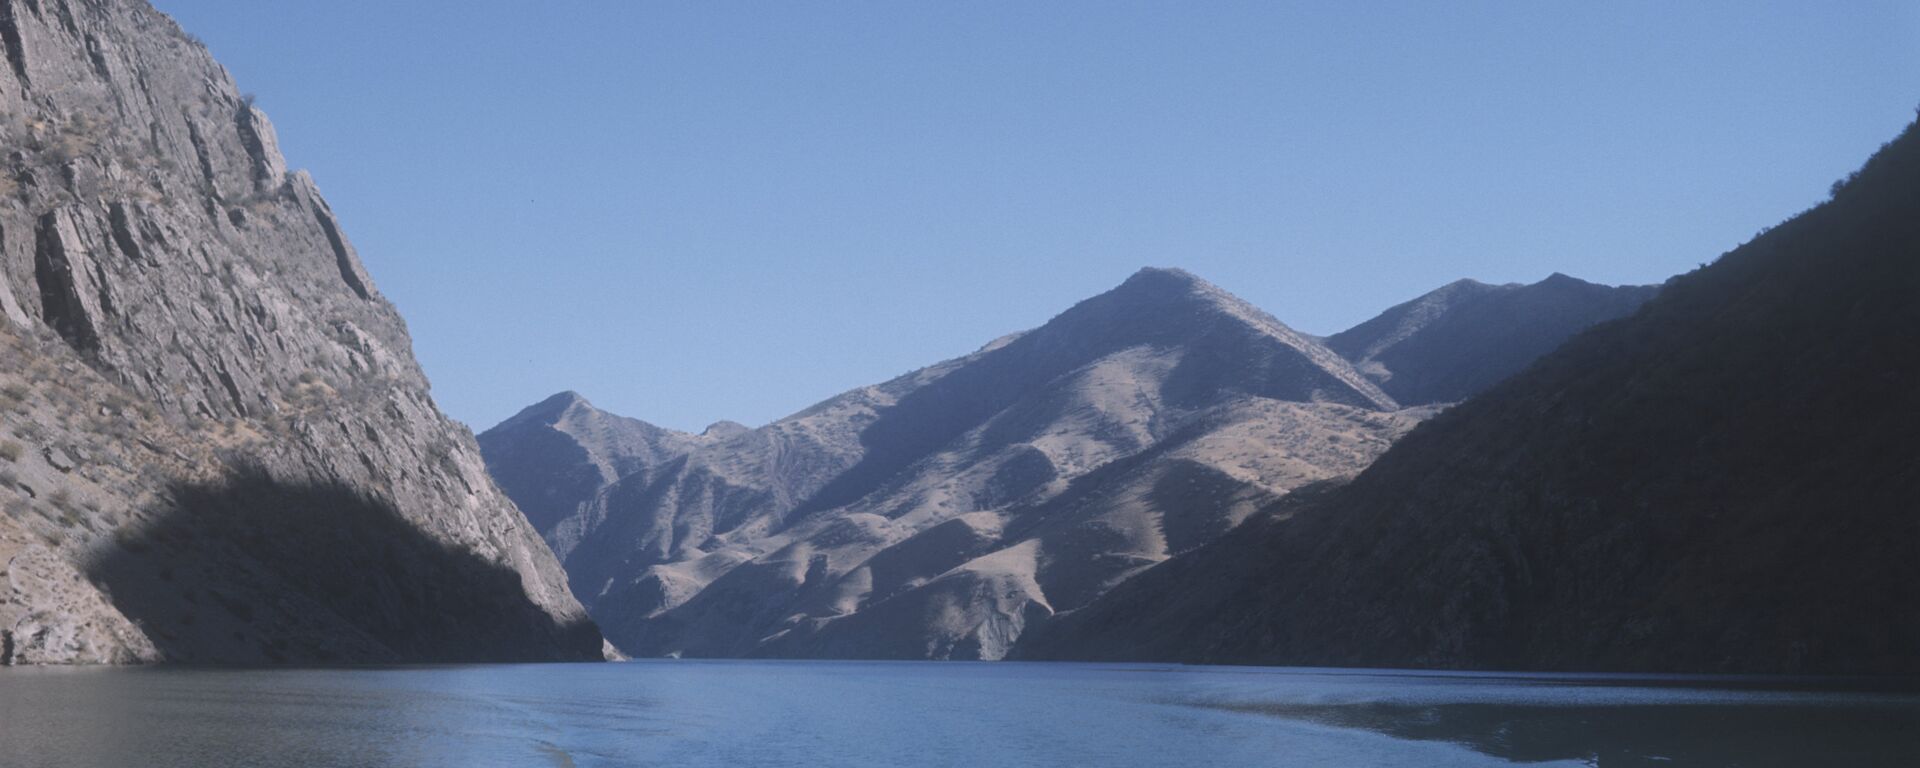 Водохранилище Вахш на реке Нурх - Sputnik Таджикистан, 1920, 14.05.2021